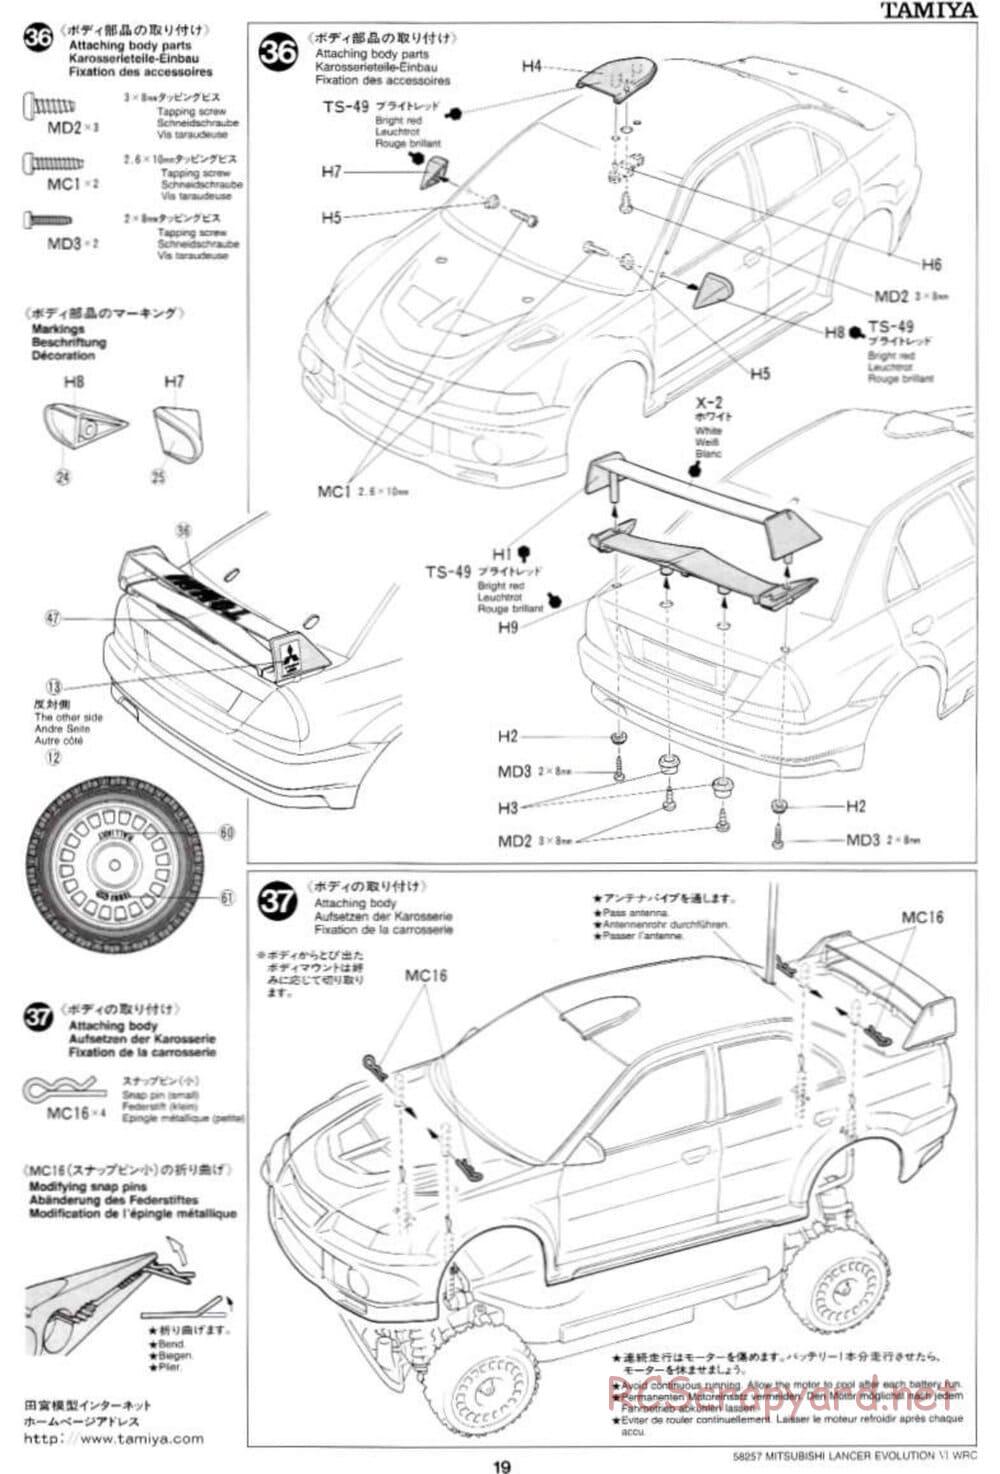 Tamiya - Mitsubishi Lancer Evolution VI WRC - TB-01 Chassis - Manual - Page 19